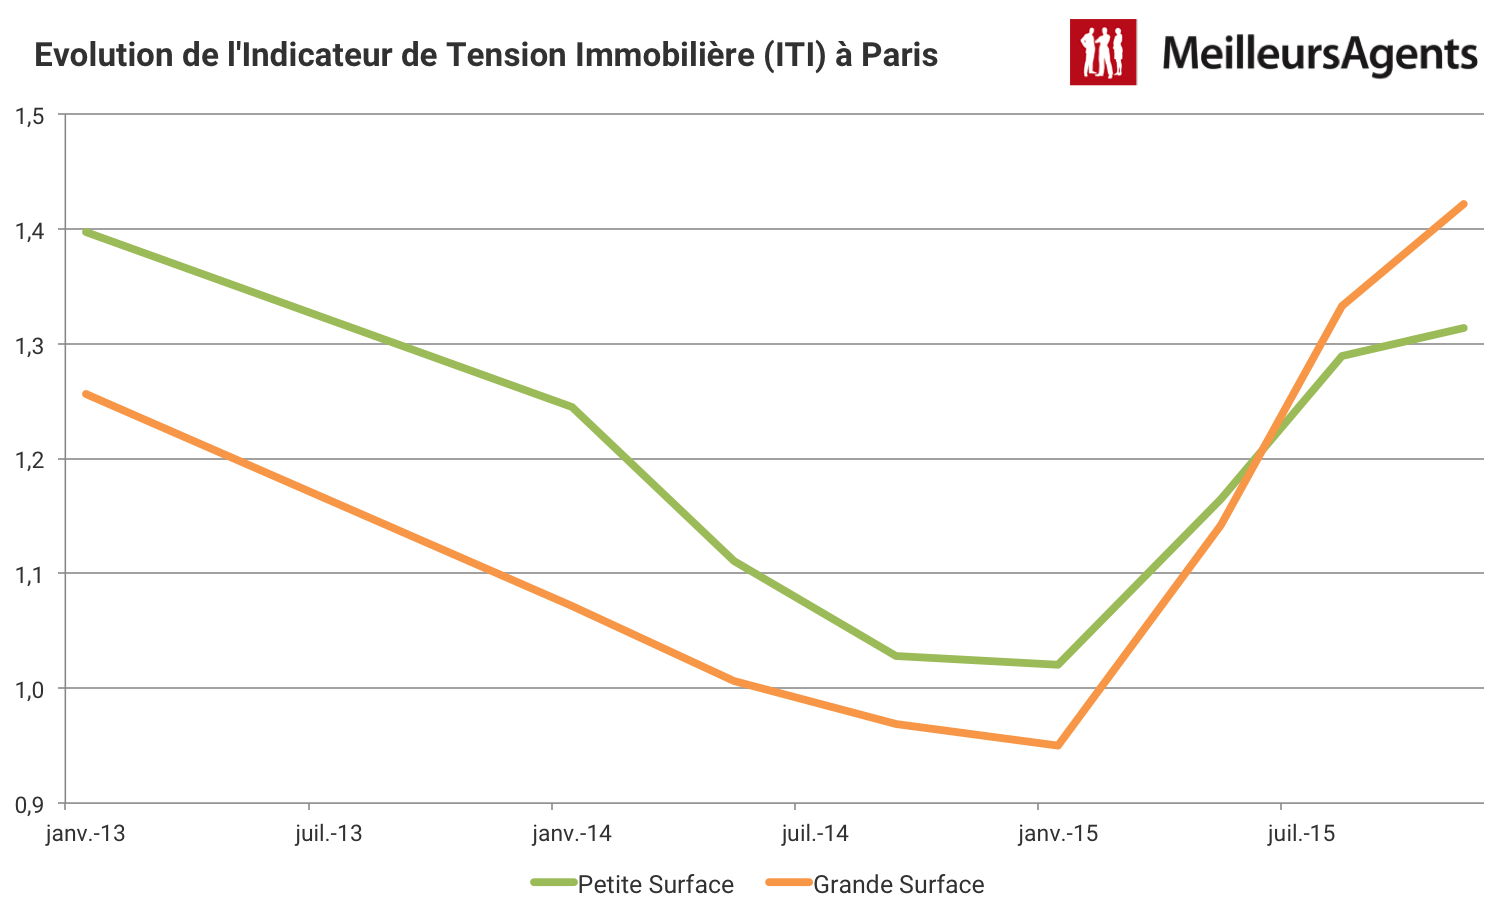 Evolution de l'Indicateur de Tension immobilière à Paris